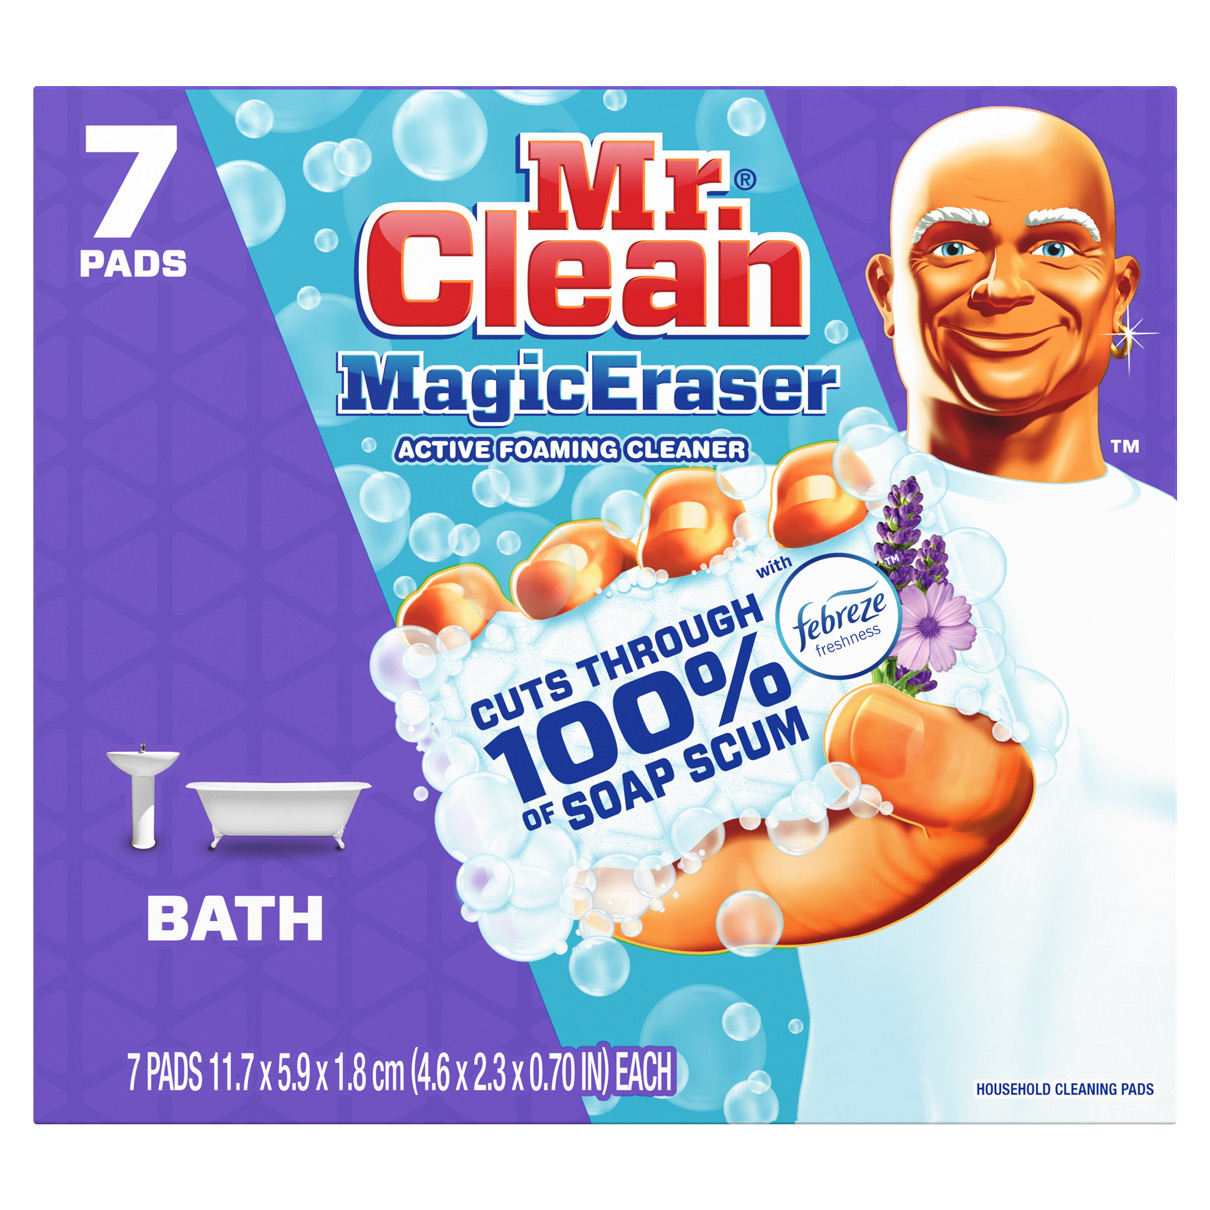 Mr Clean Bar Brush